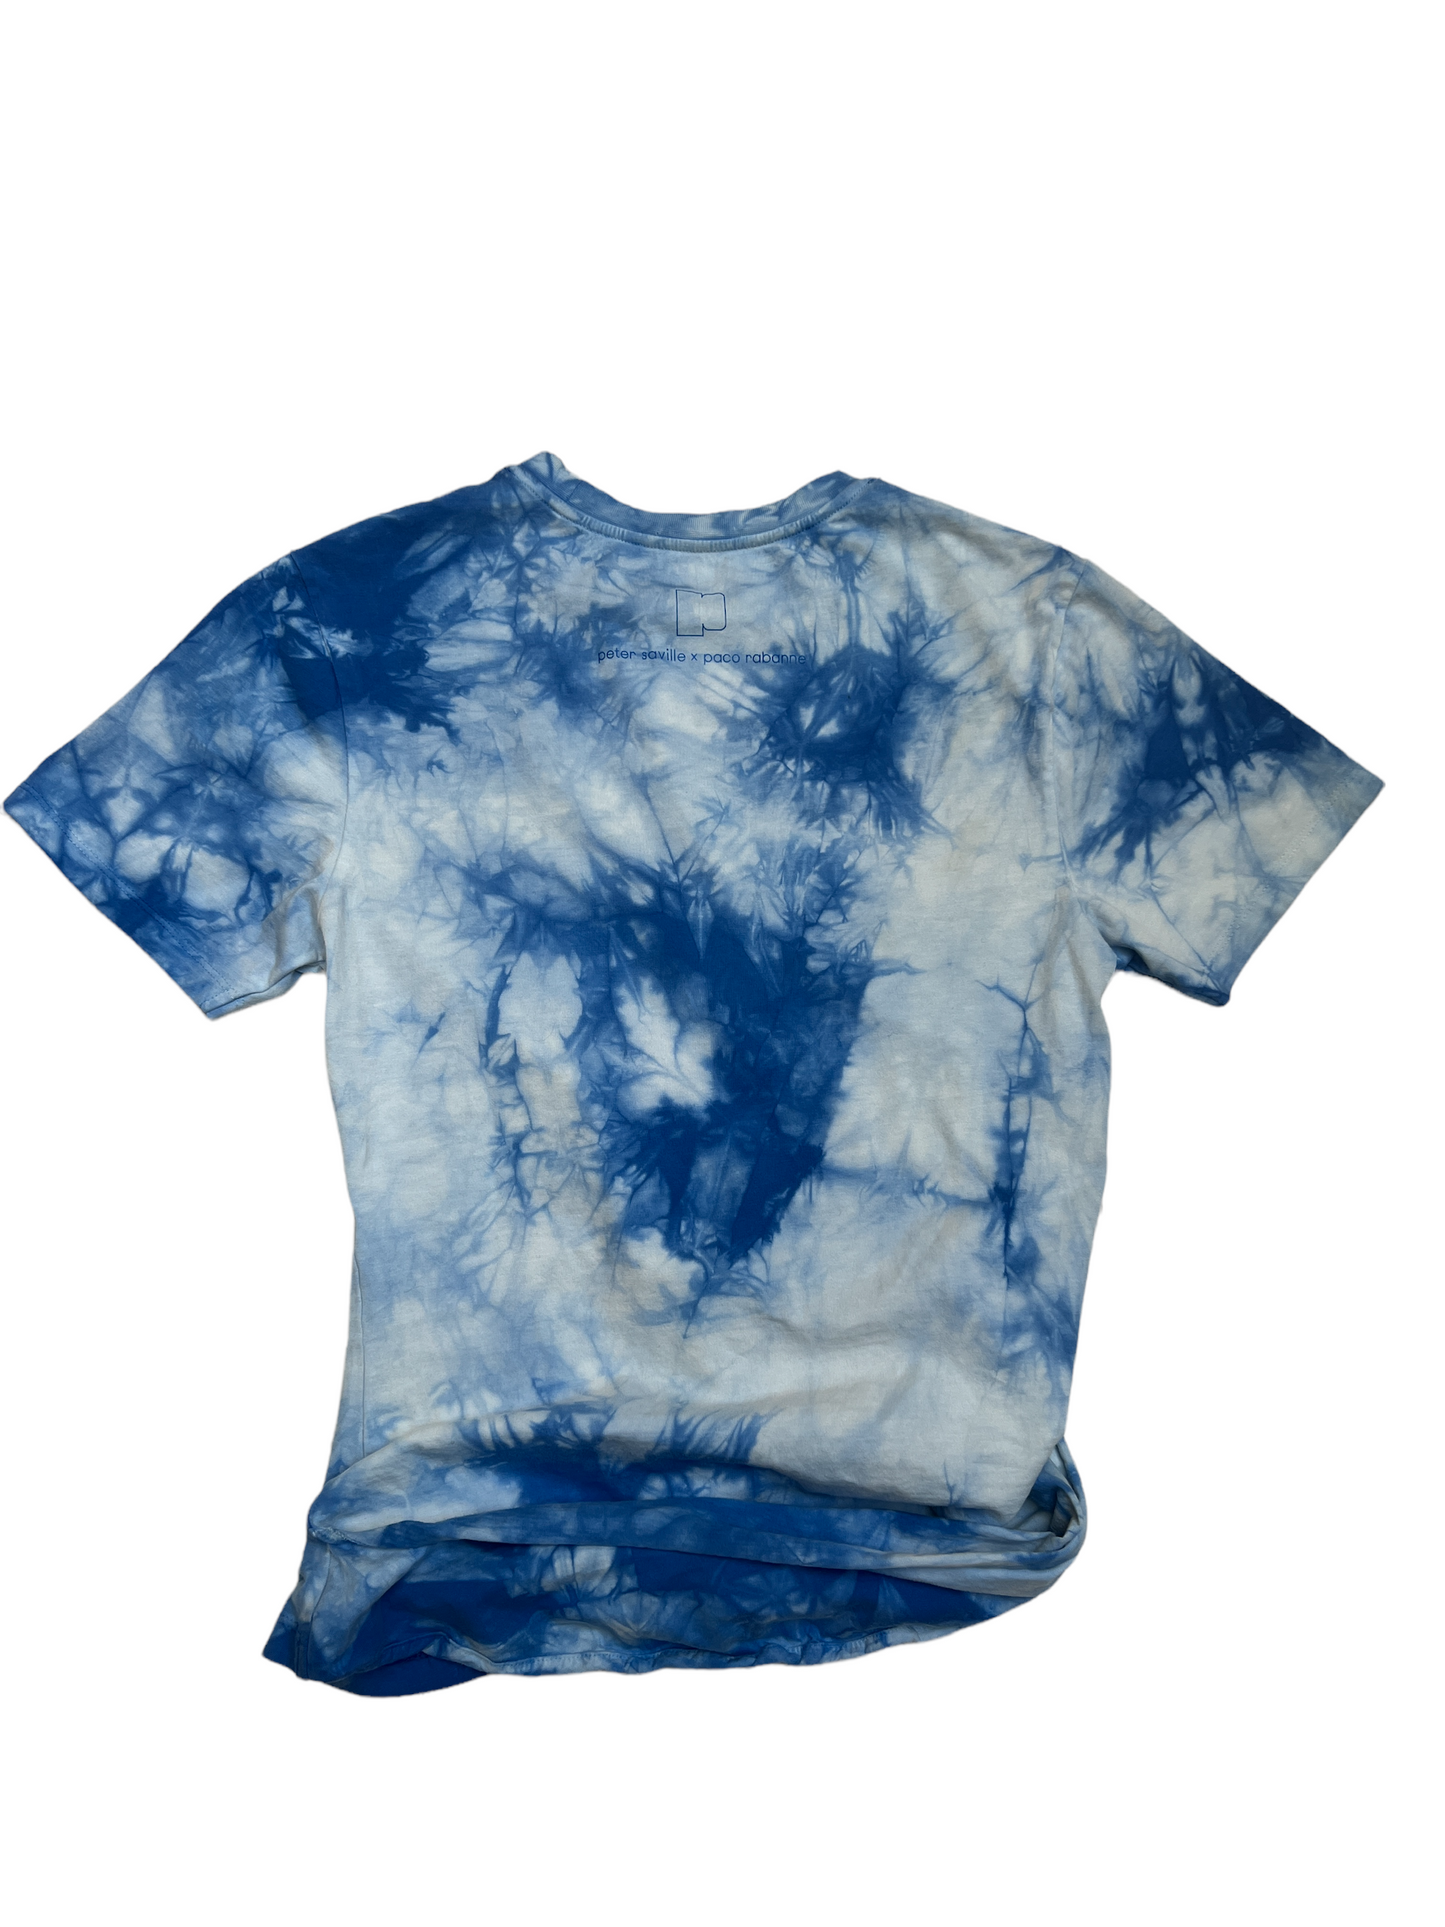 Tie-dye cotton T-shirt - S